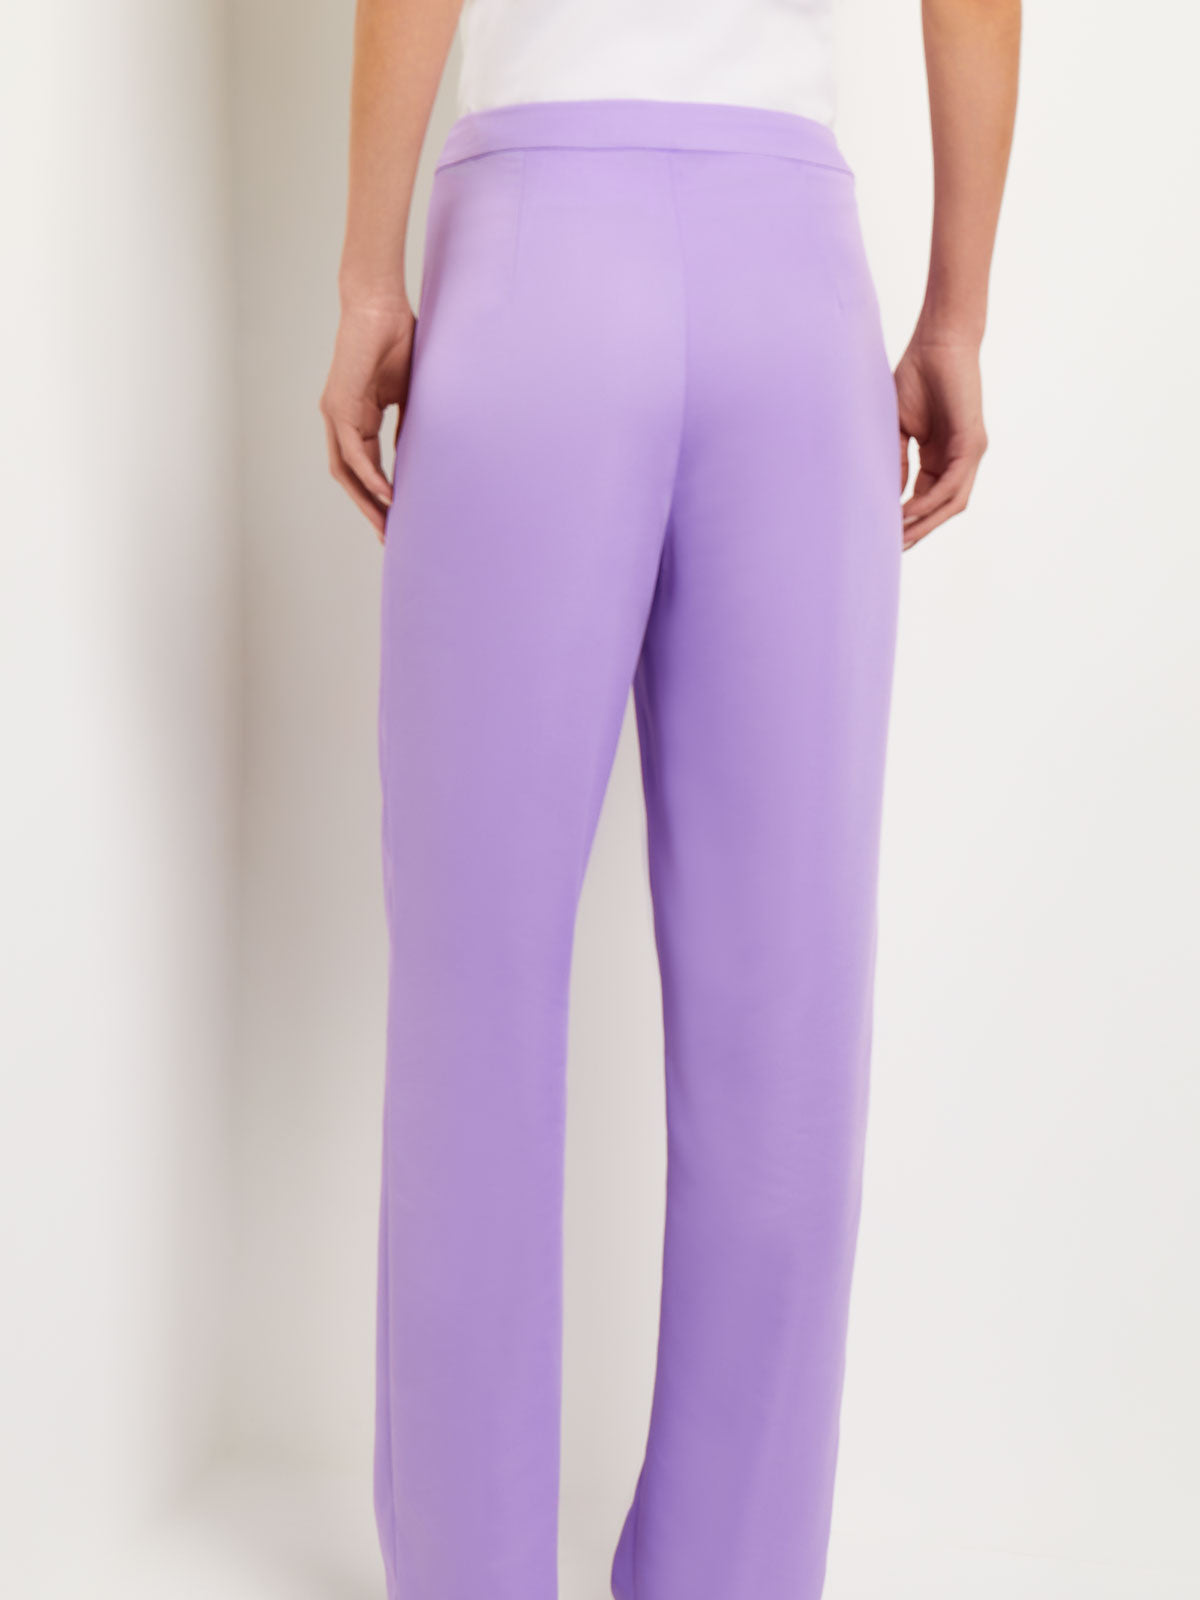 Finesse Lavender Pleather Wide Leg Pants, Size 1X – The Plus Bus